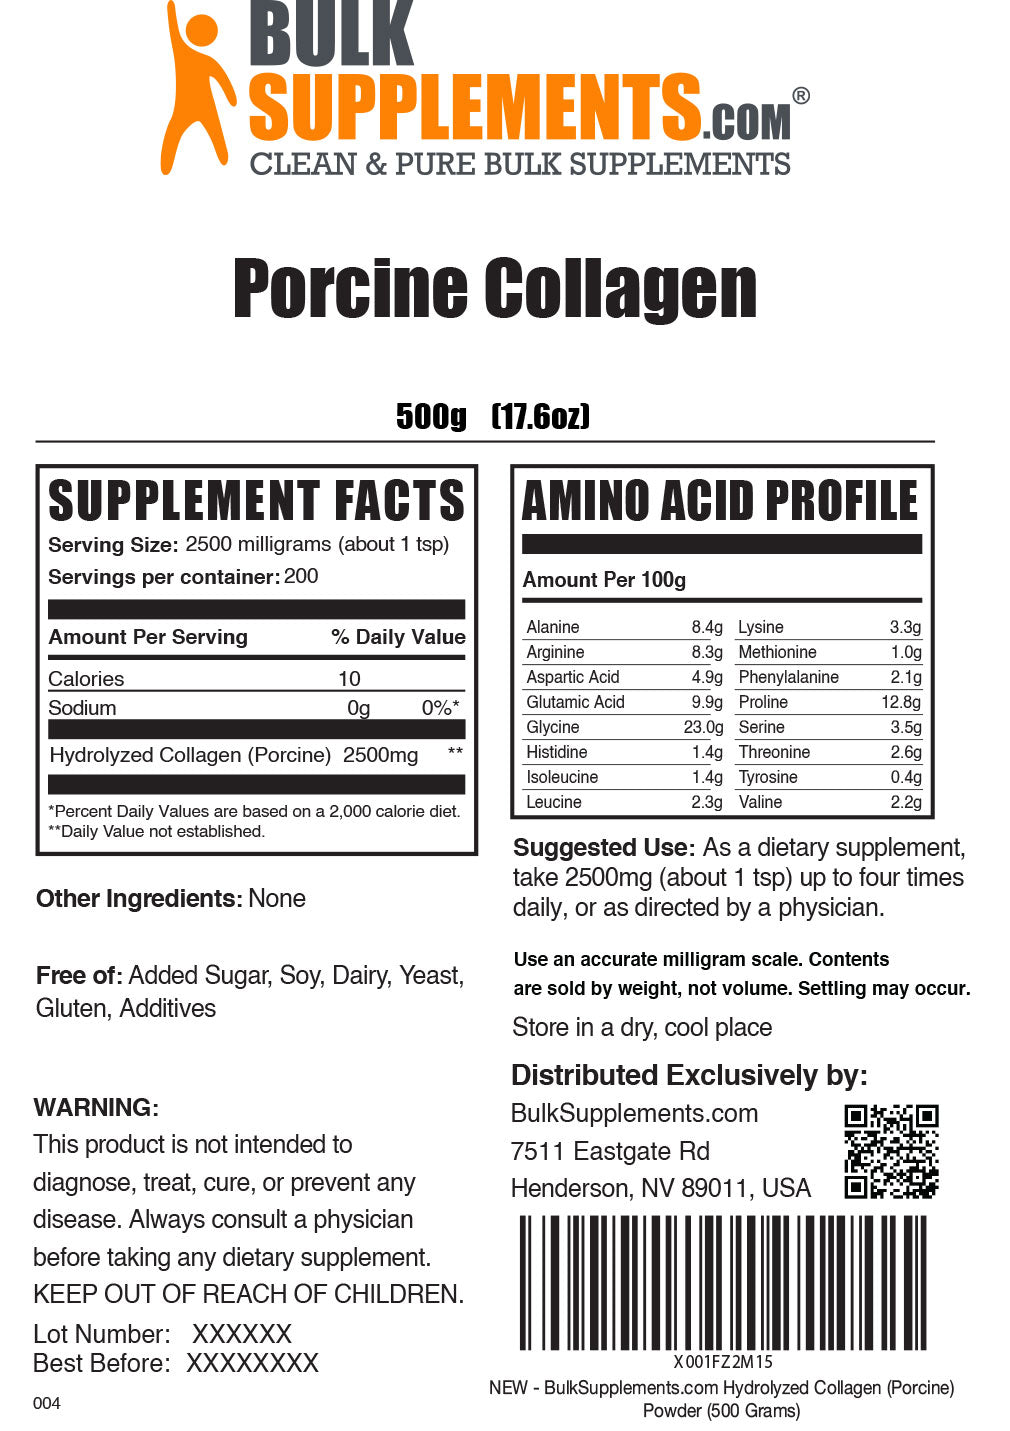 Porcine collagen powder label 500g